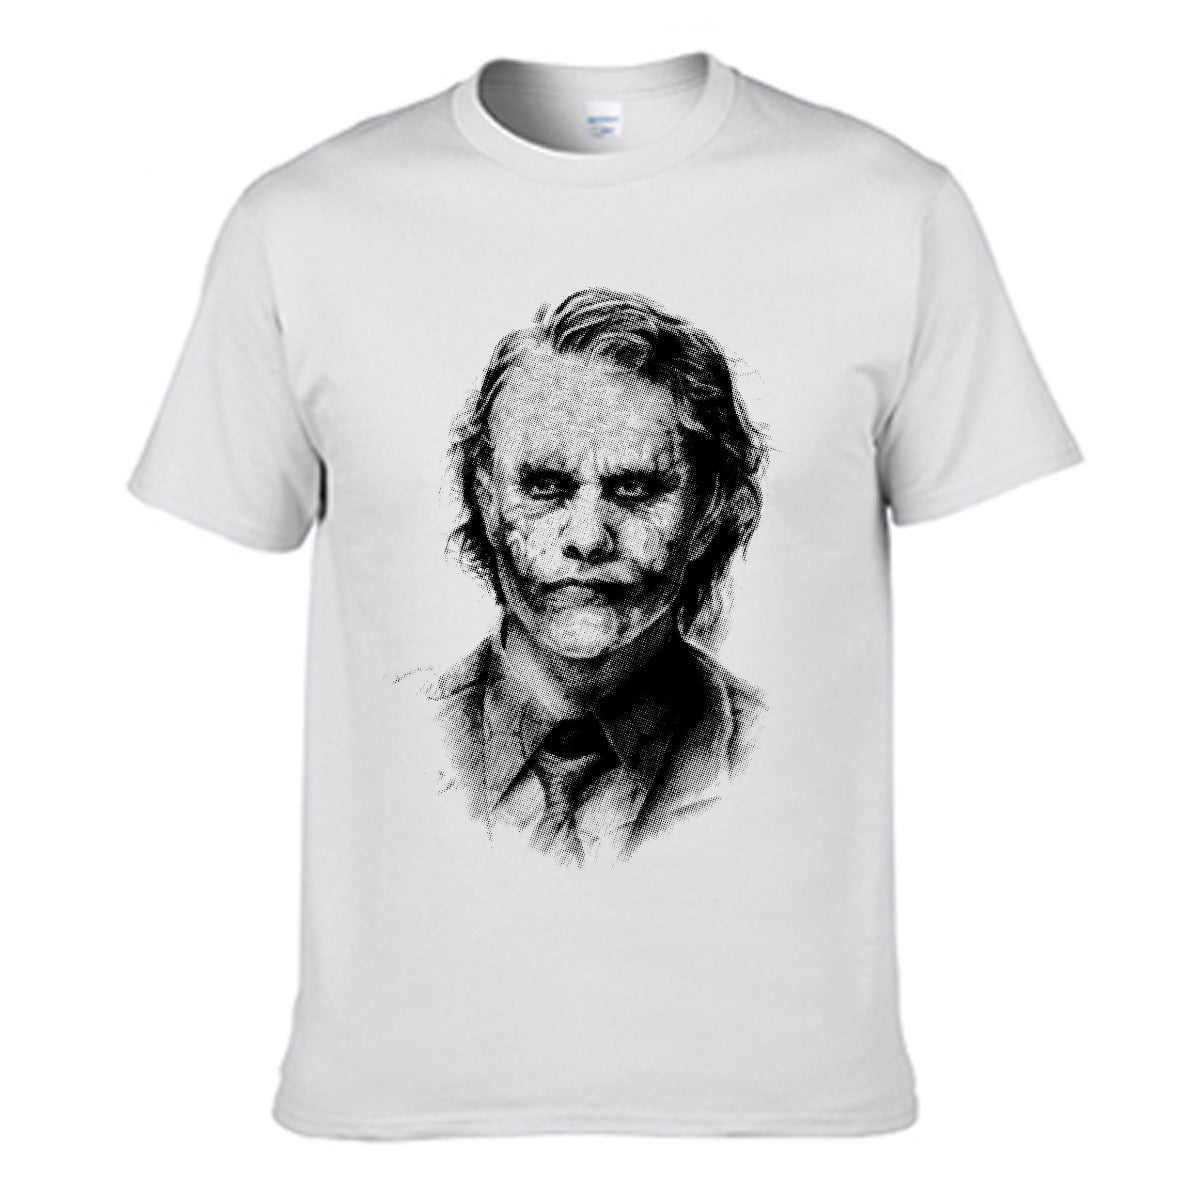 Joker Men's T-shirt (100% Cotton) - T0203